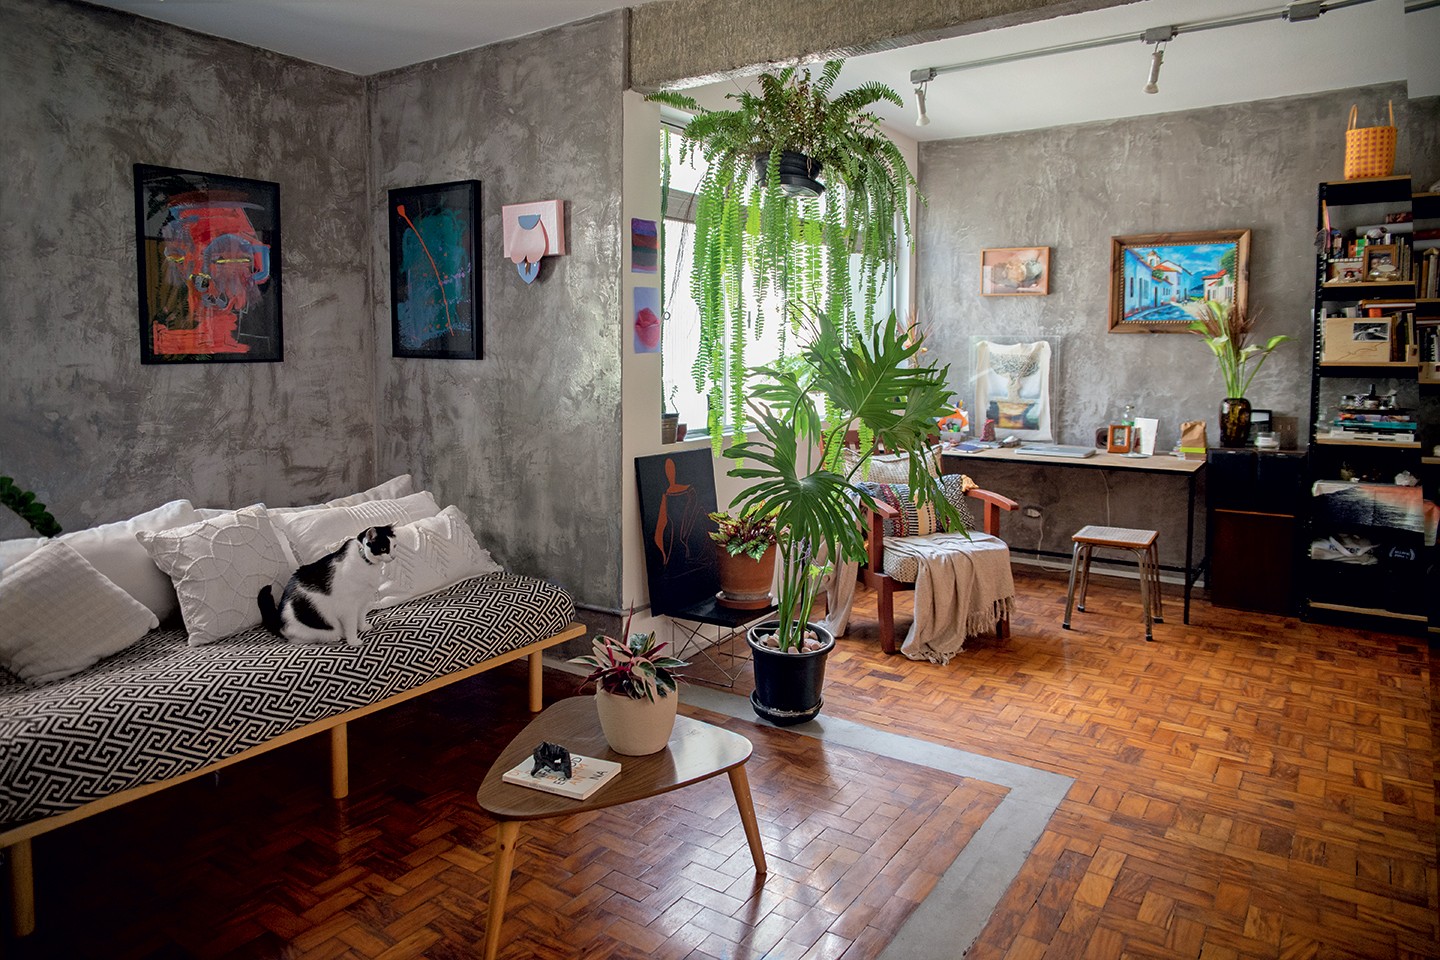 Apartamento de 70 m² de curadora de arte é repleto  de obras de jovens artistas mulheres (Foto: Pan Alves)